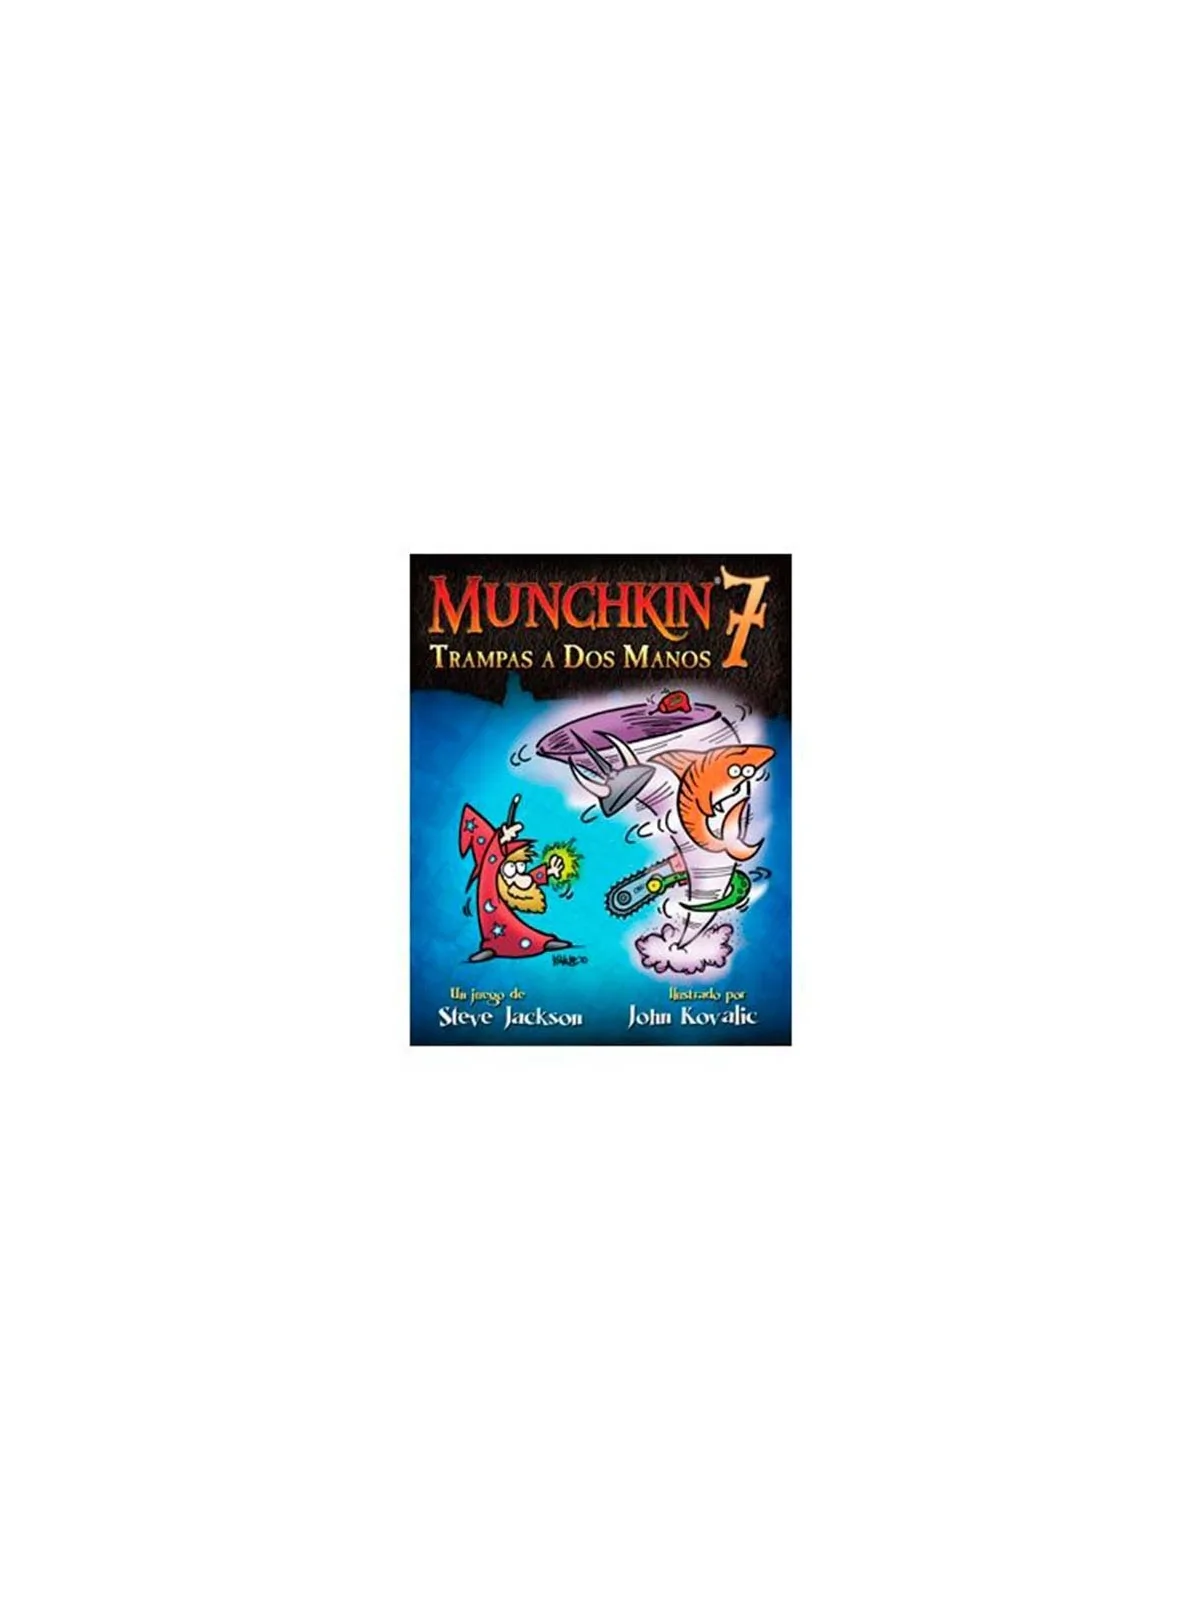 Comprar Munchkin 7: Trampas a dos Manos barato al mejor precio 14,39 €